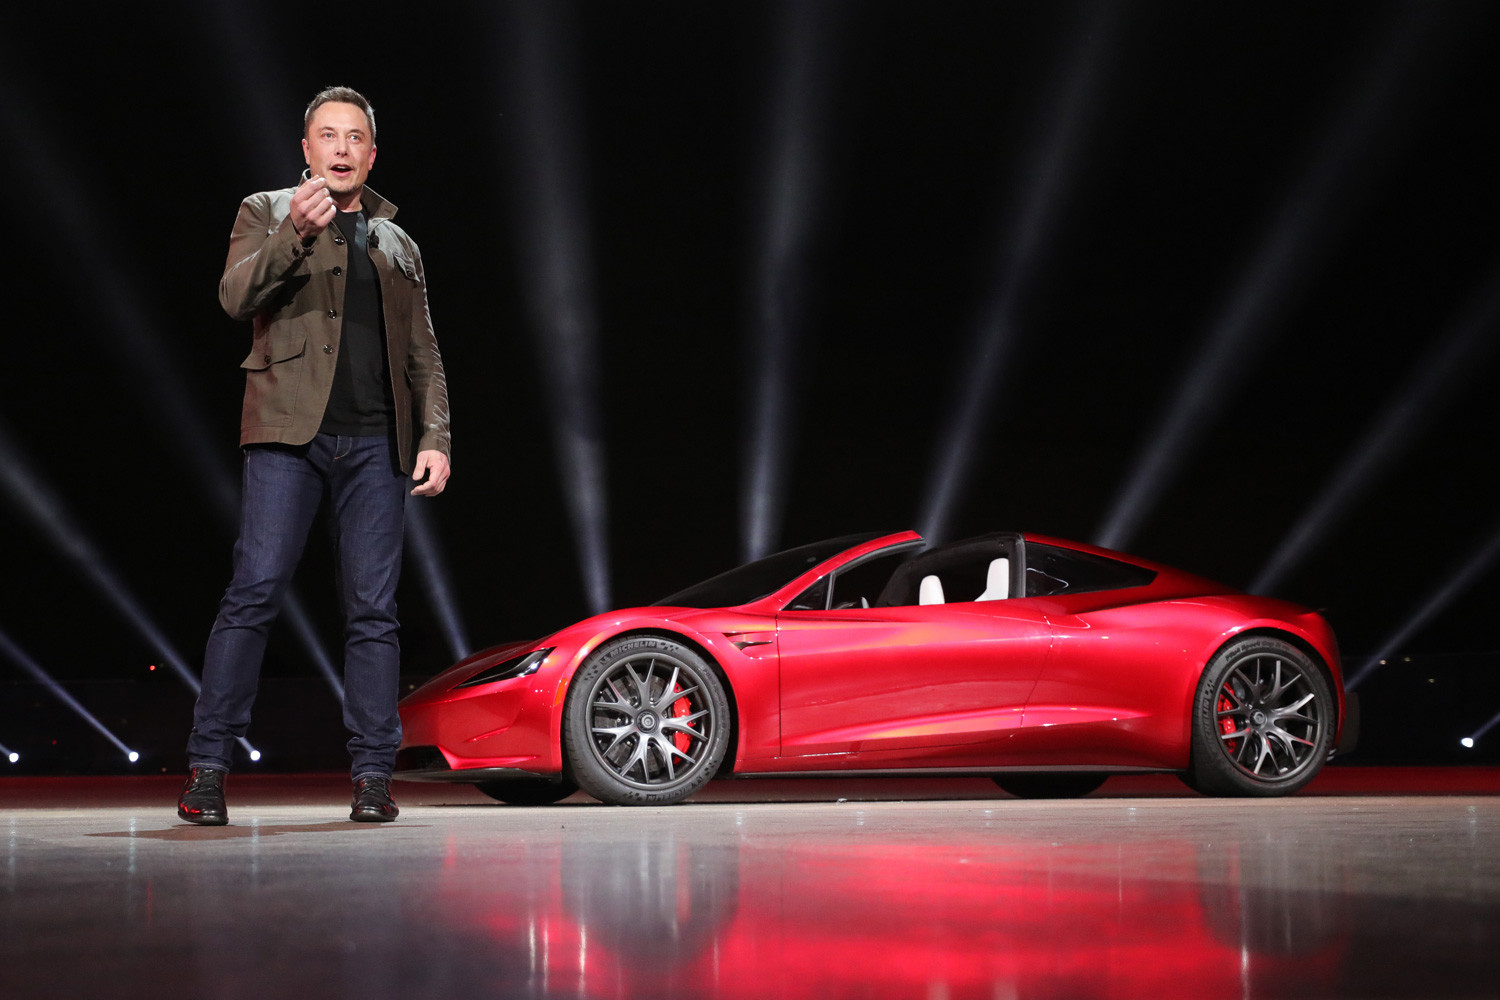 Електромобил Tesla Motors 2020 Roadster, САЩ, 2017 г.